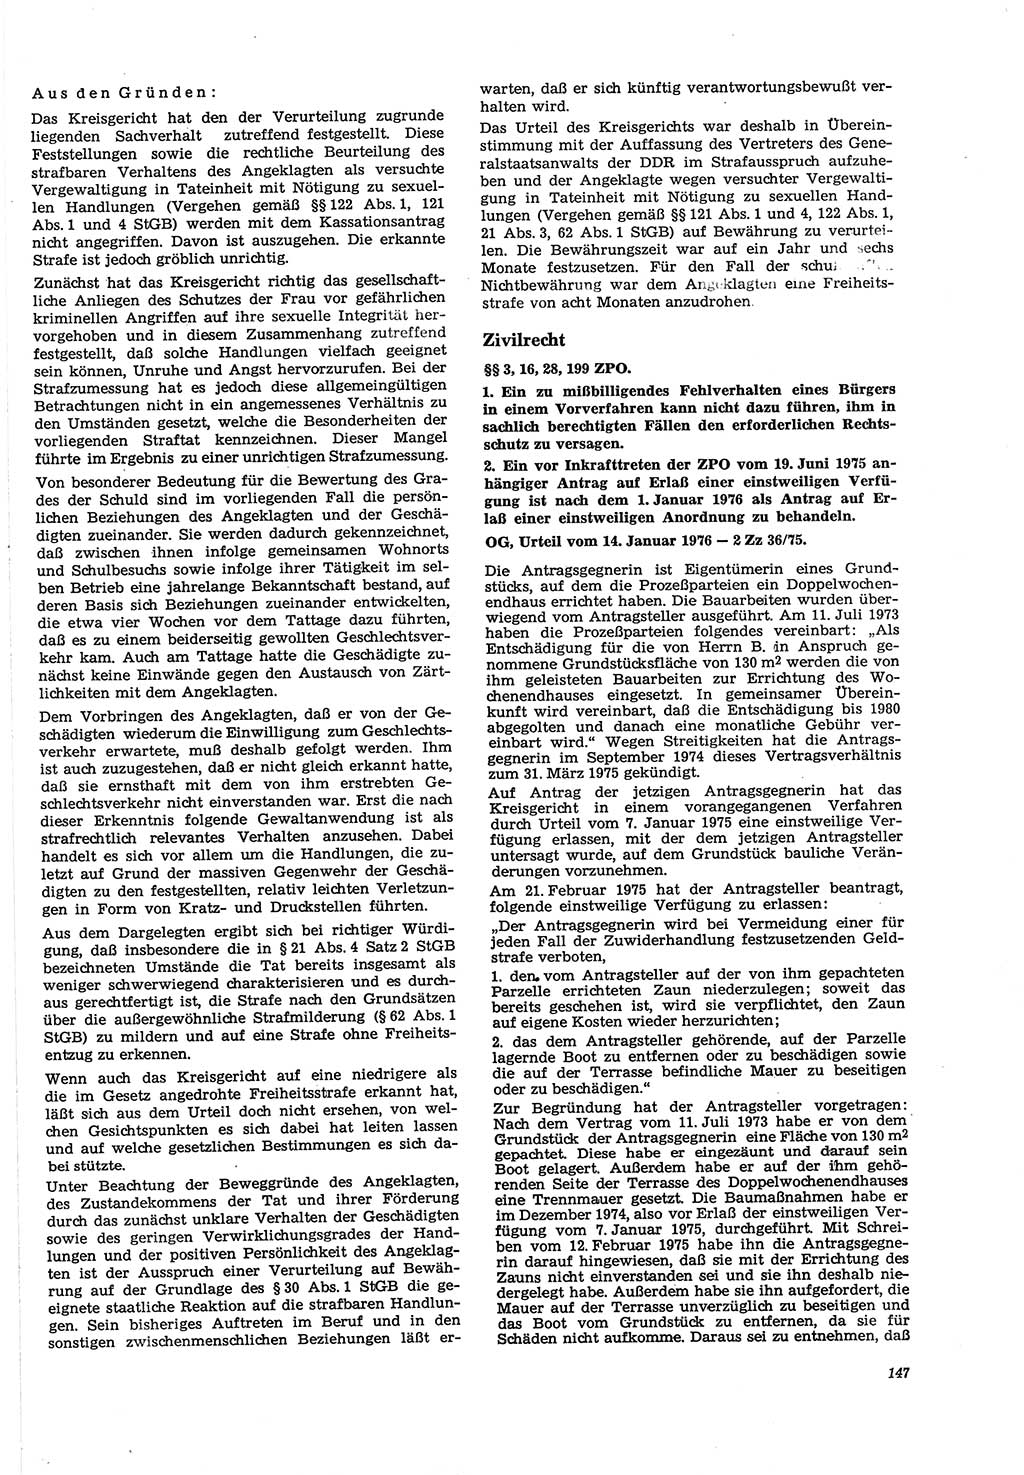 Neue Justiz (NJ), Zeitschrift für Recht und Rechtswissenschaft [Deutsche Demokratische Republik (DDR)], 30. Jahrgang 1976, Seite 147 (NJ DDR 1976, S. 147)